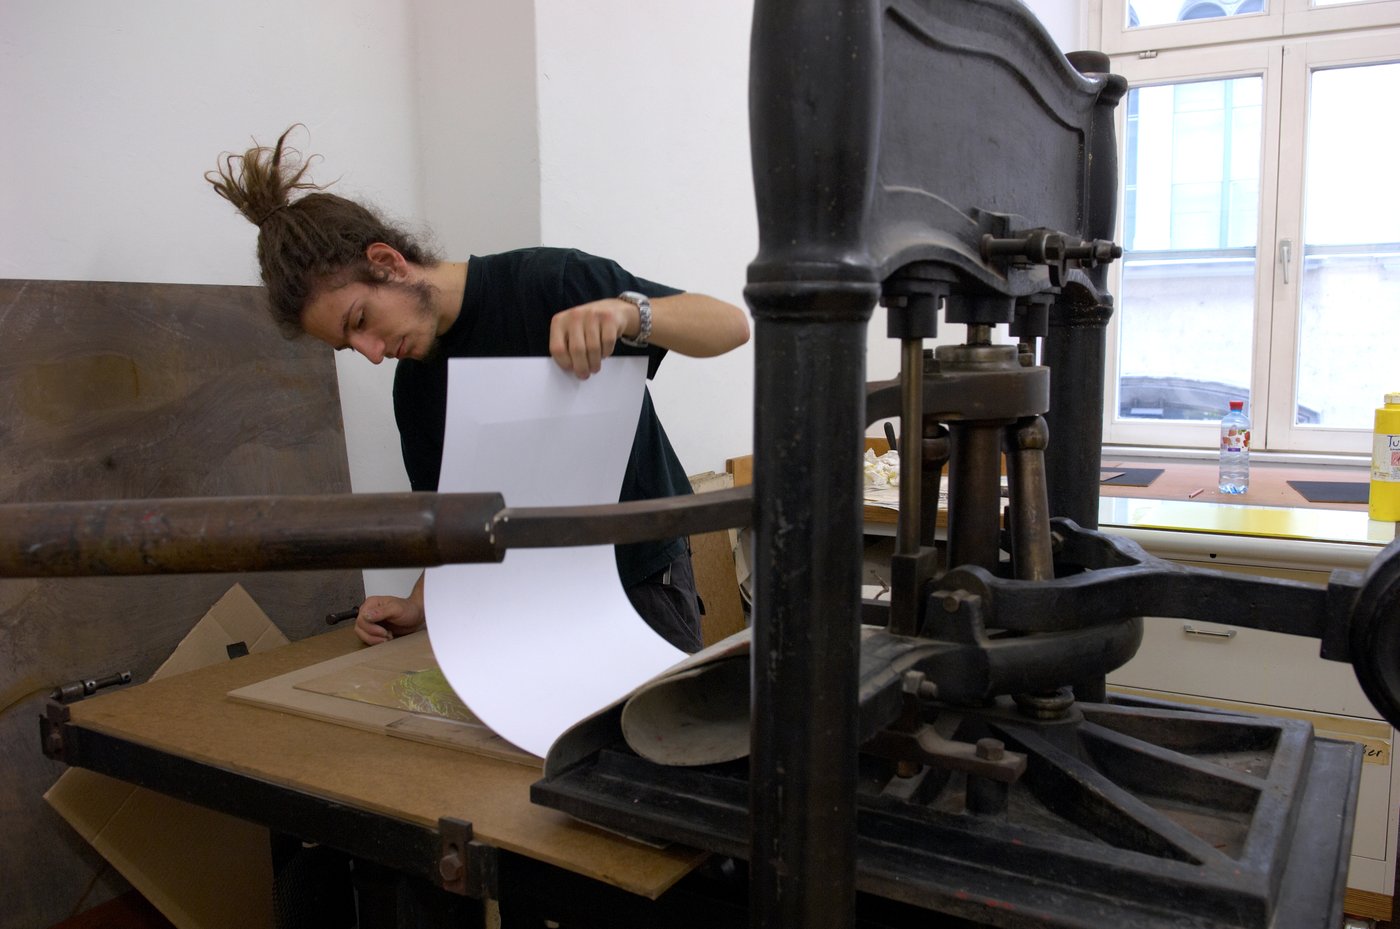 Ein Student steht an einer großen schweren Druckermaschine und überprüft gerade das Ergebnis, indem er das Falzblatt hochhebt.